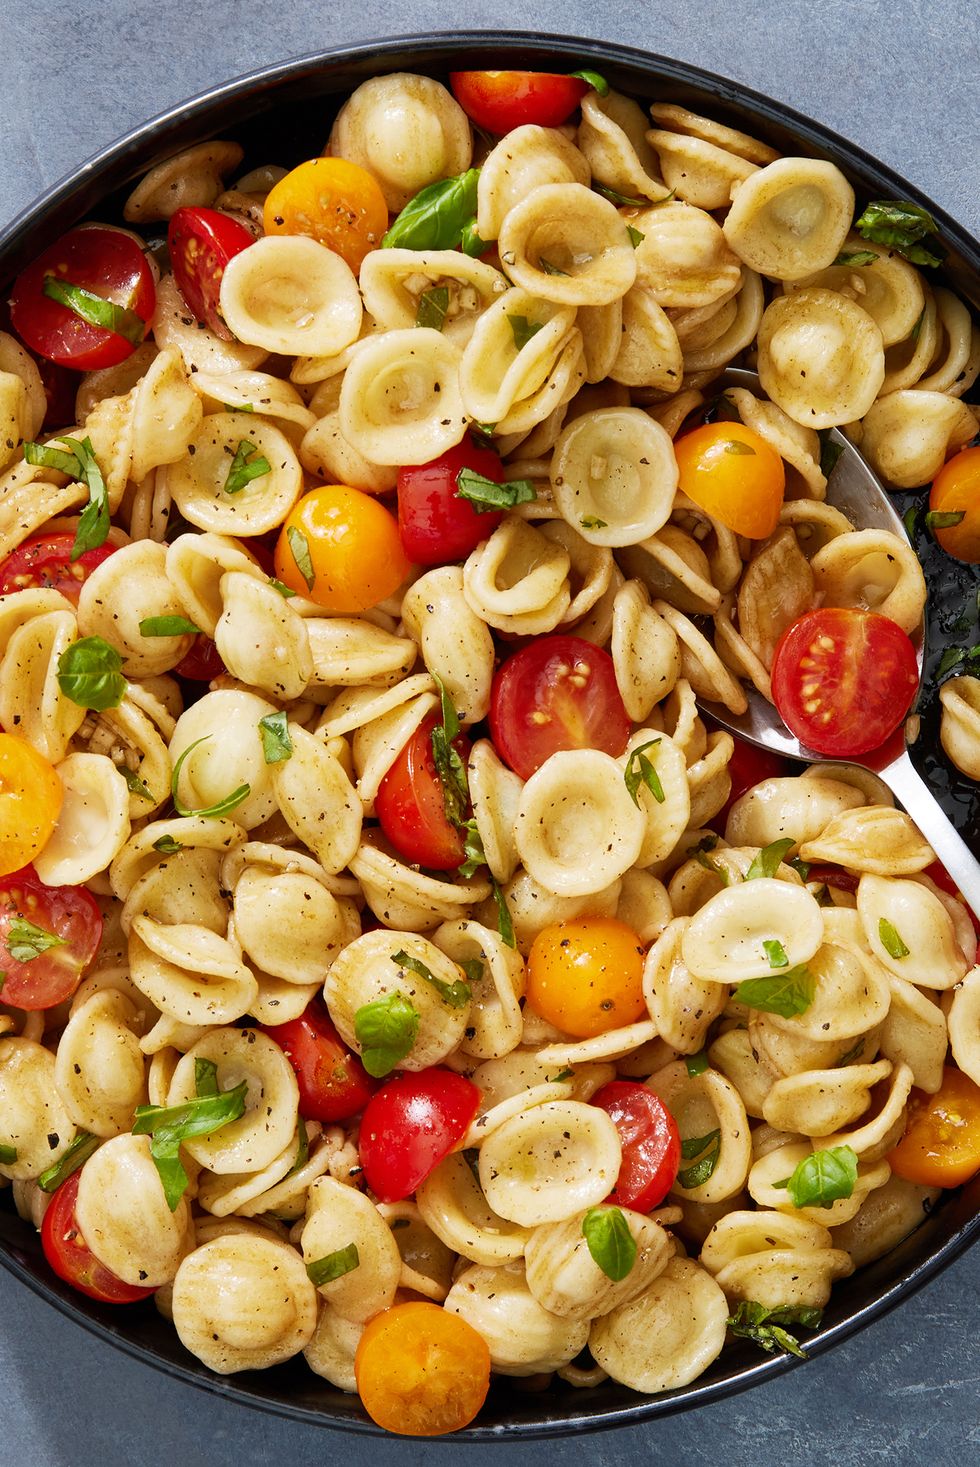 bruschetta pasta salad with fresh cherry tomatoes and basil